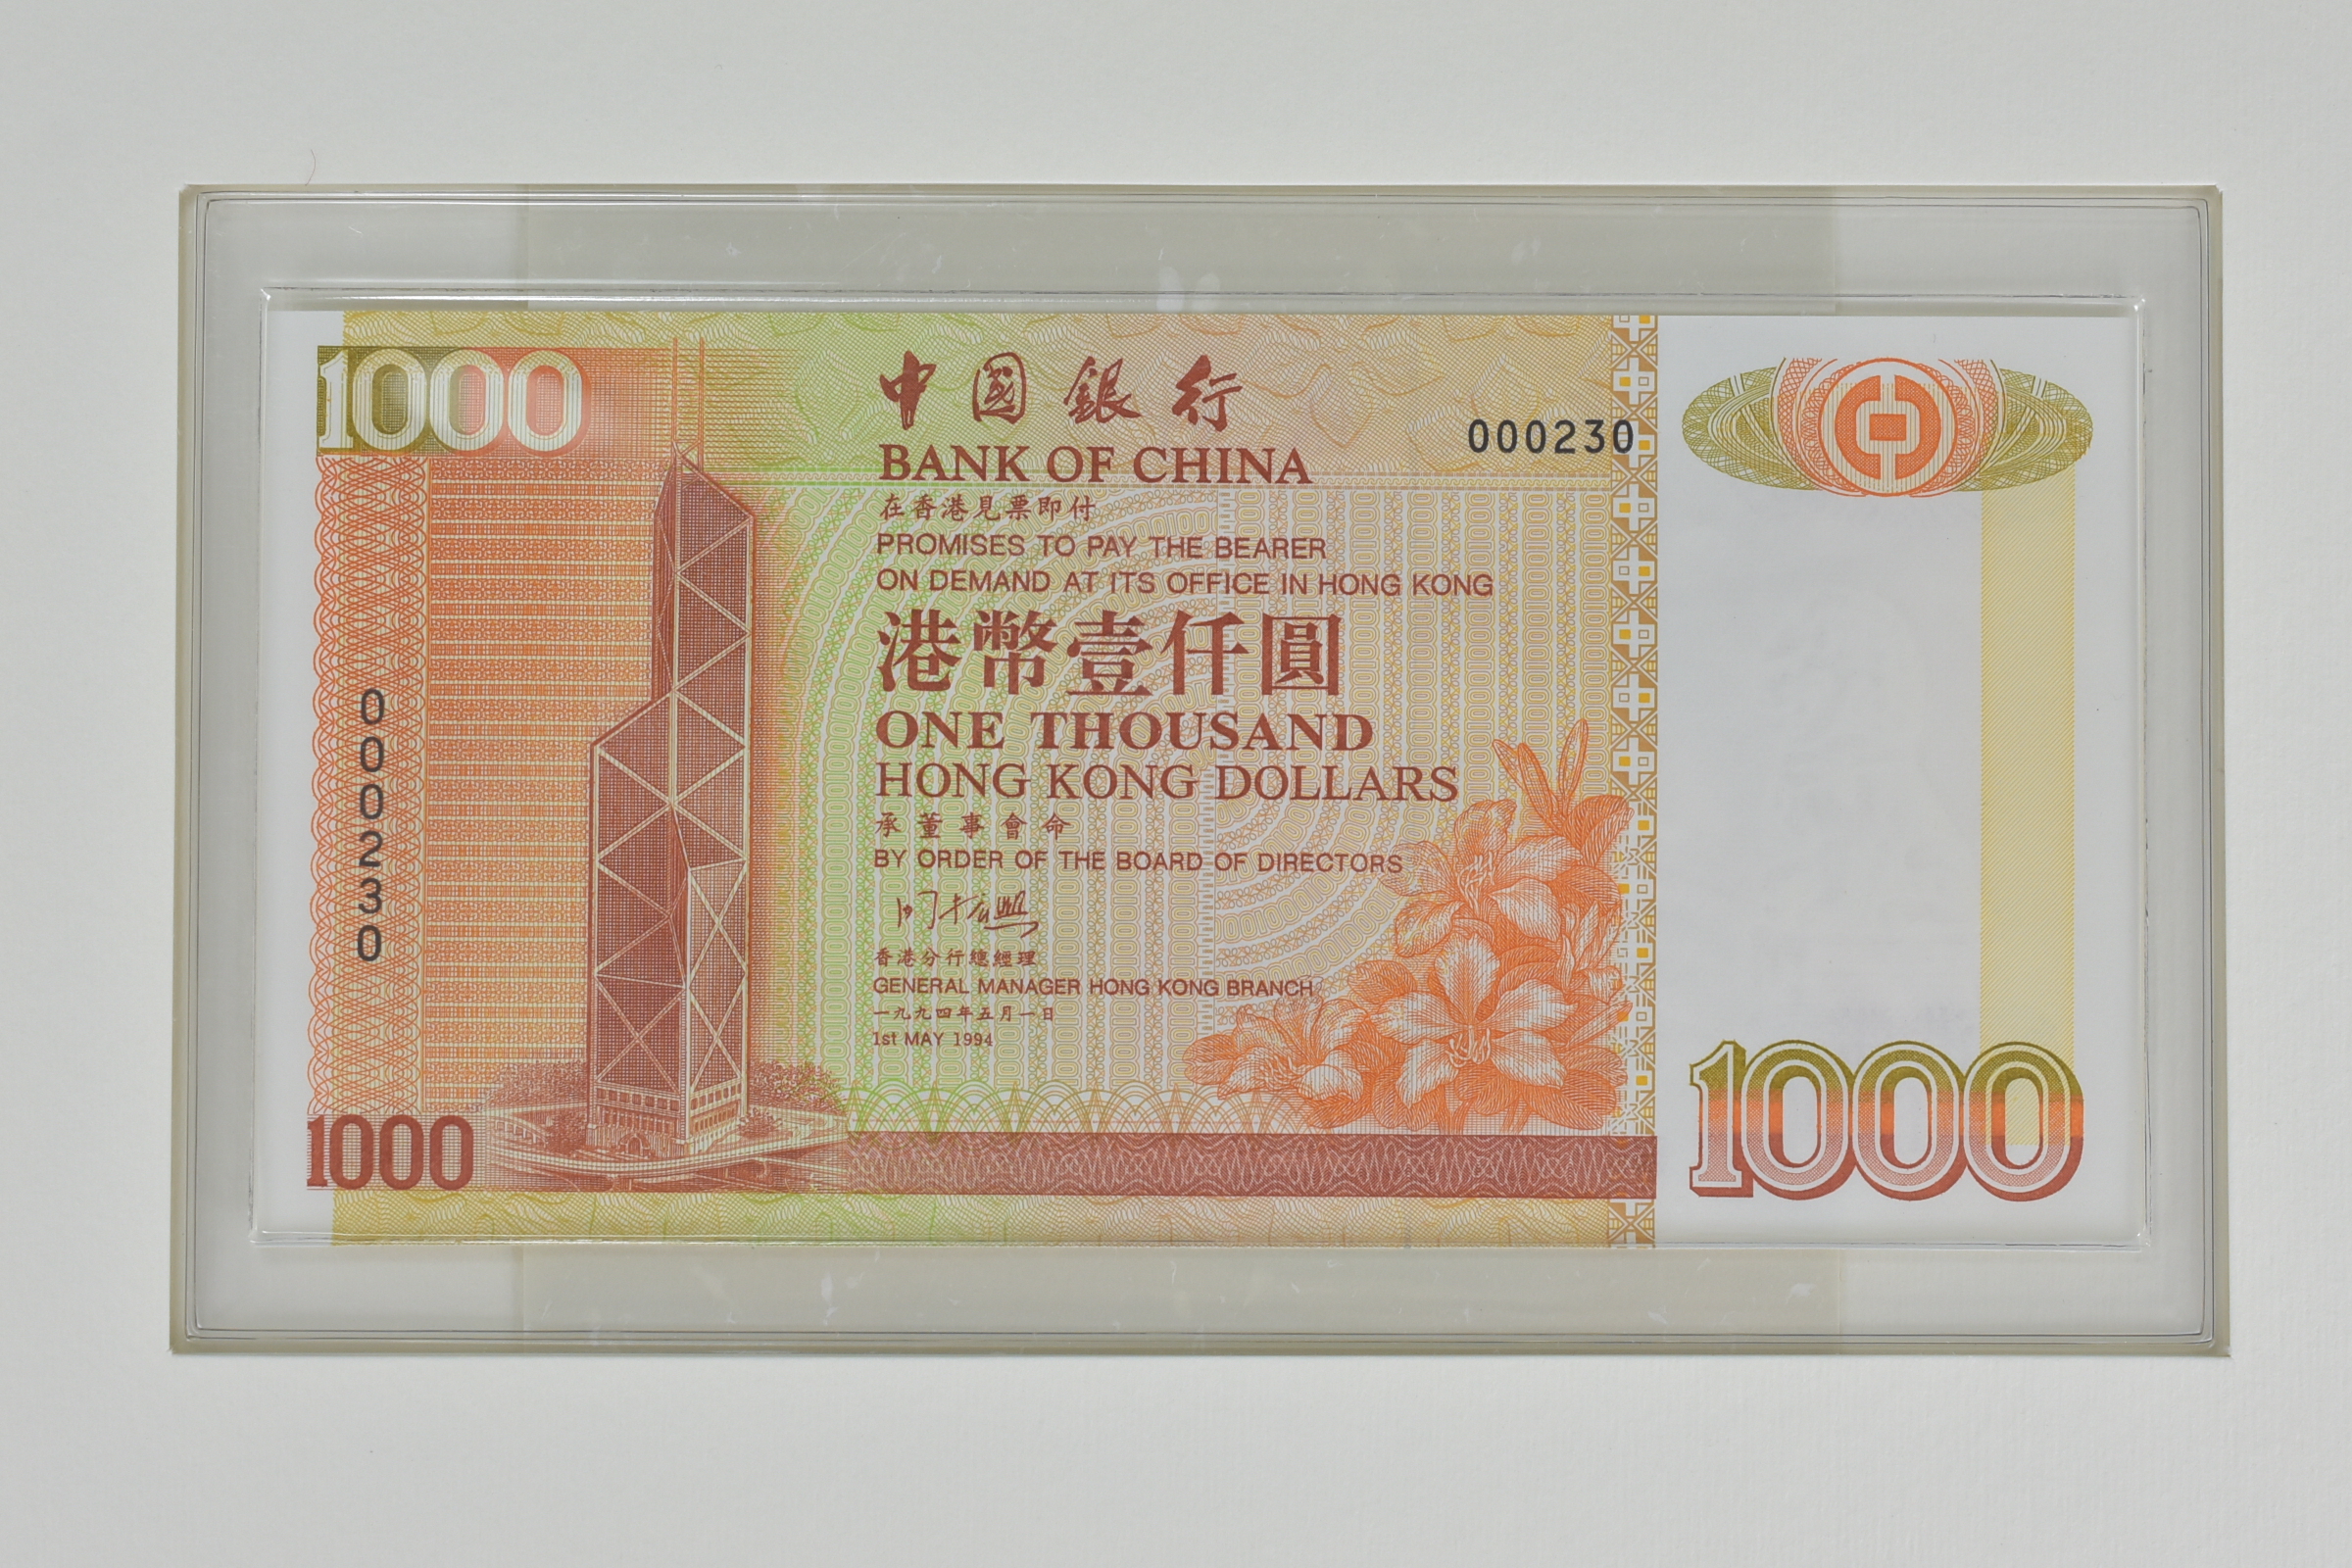 Bank of China Hong Kong Dollar Notes Commemorative set